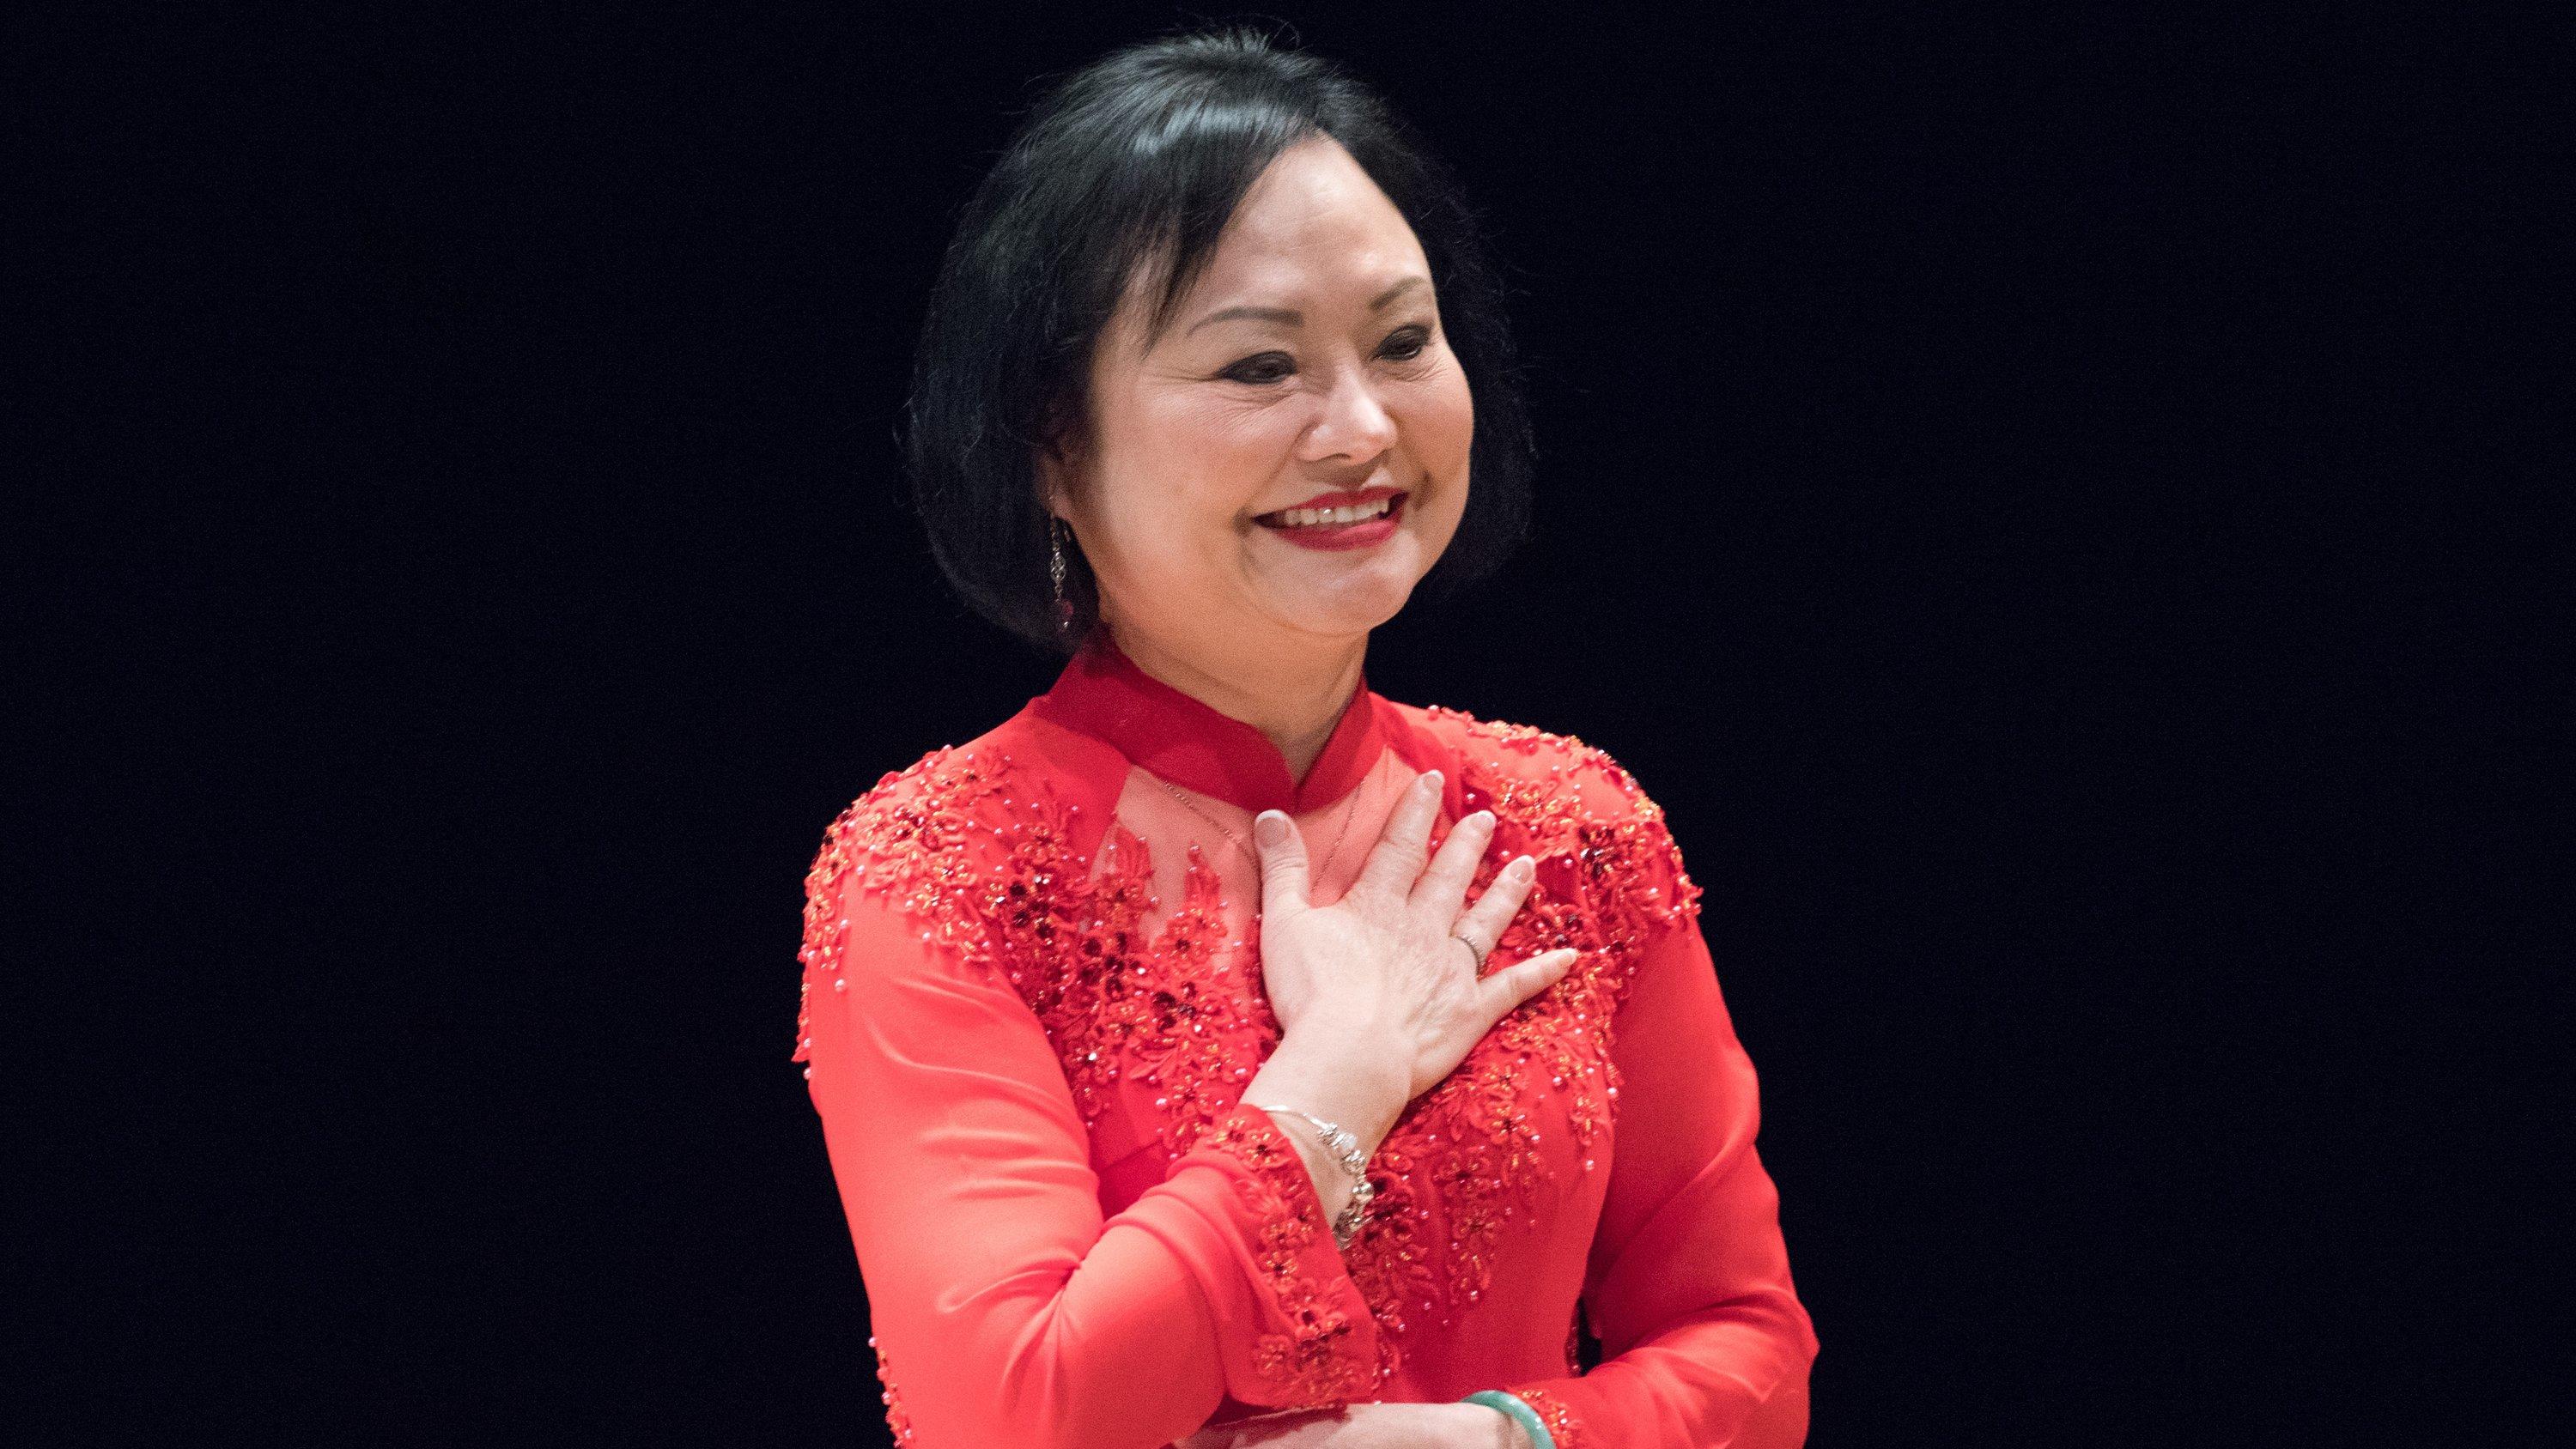 ARCHIV - 11.02.2019, Sachsen, Dresden: Die Vietnamesin Kim Phuc Phan Thi reagiert nach der Verleihung des 10. Internationalen Friedenspreis in der Semperoper. Sie wurde 1972 durch ein Kriegsfoto als das "Napalm-Mädchen" bekannt. Es ist eine der denkw